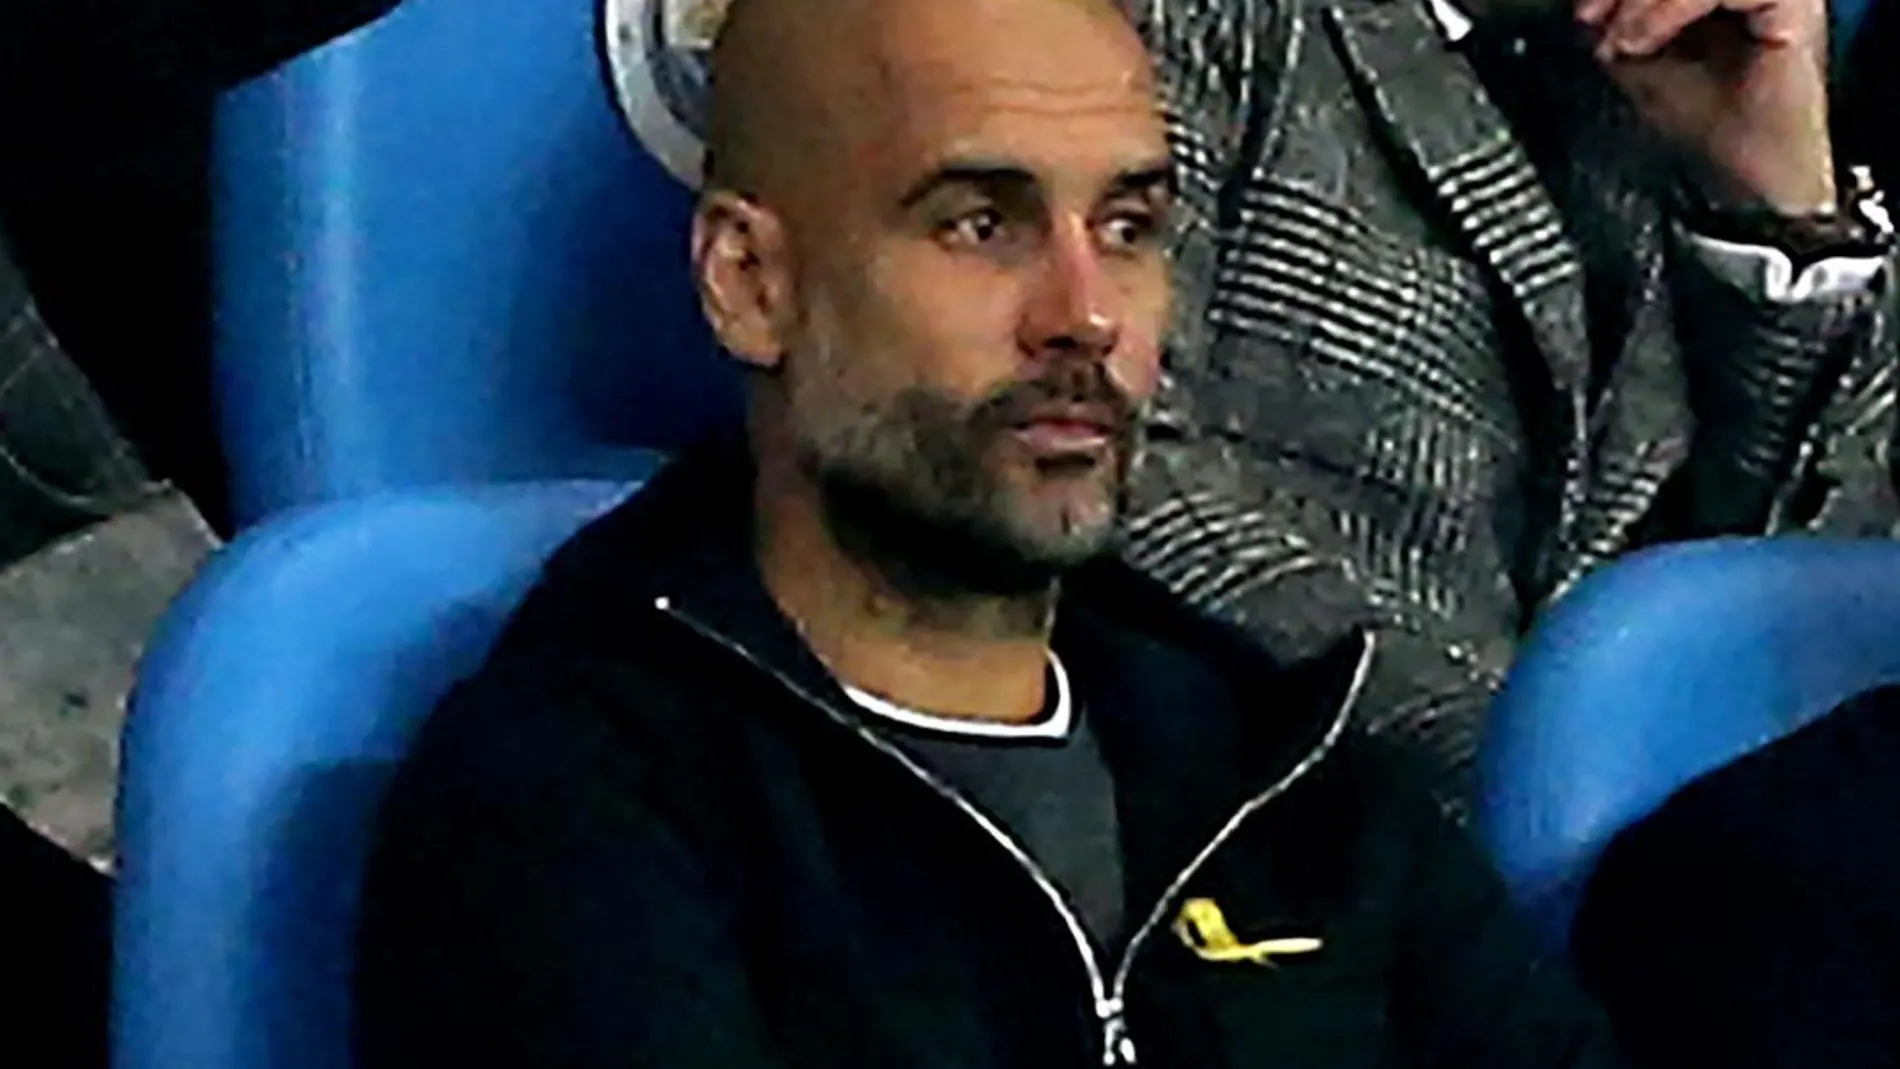 El entrenador del Manchester City, Pep Guardiola (i), observa el encuentro desde la tribuna tras ser expulsado del campo. EFE/Nigel Roddis